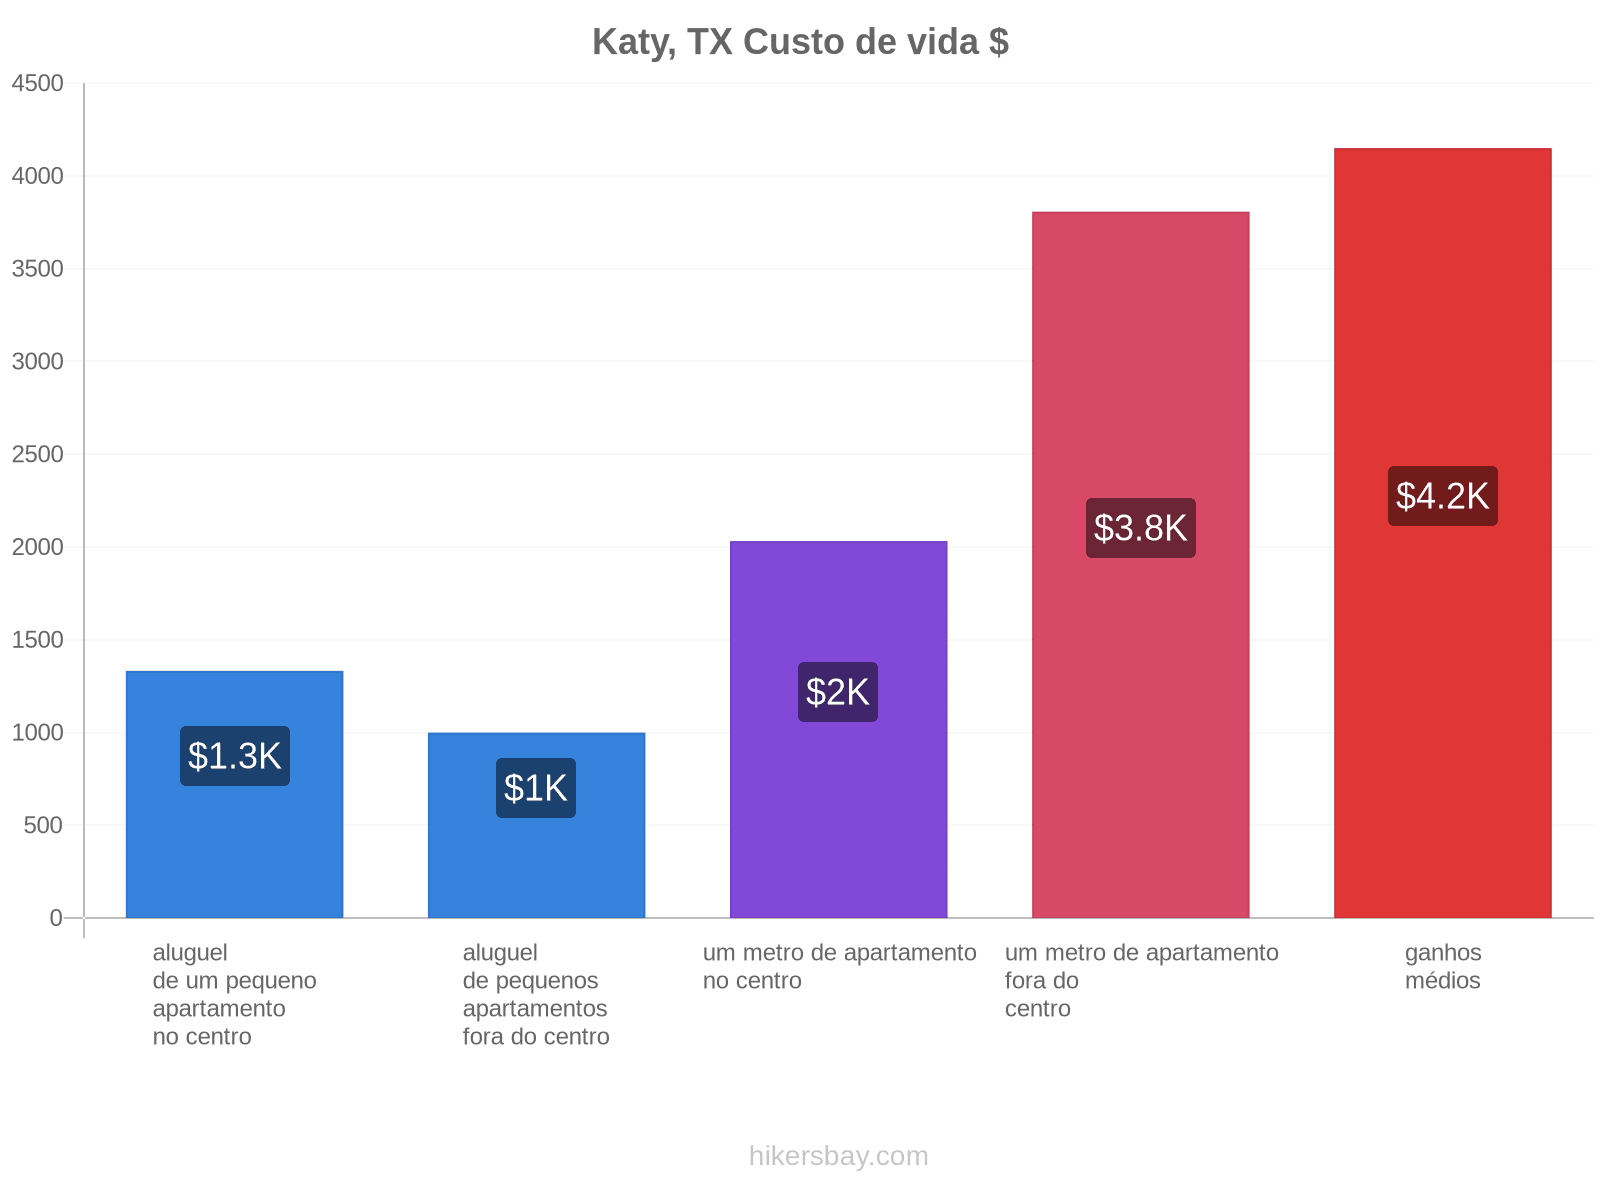 Katy, TX custo de vida hikersbay.com